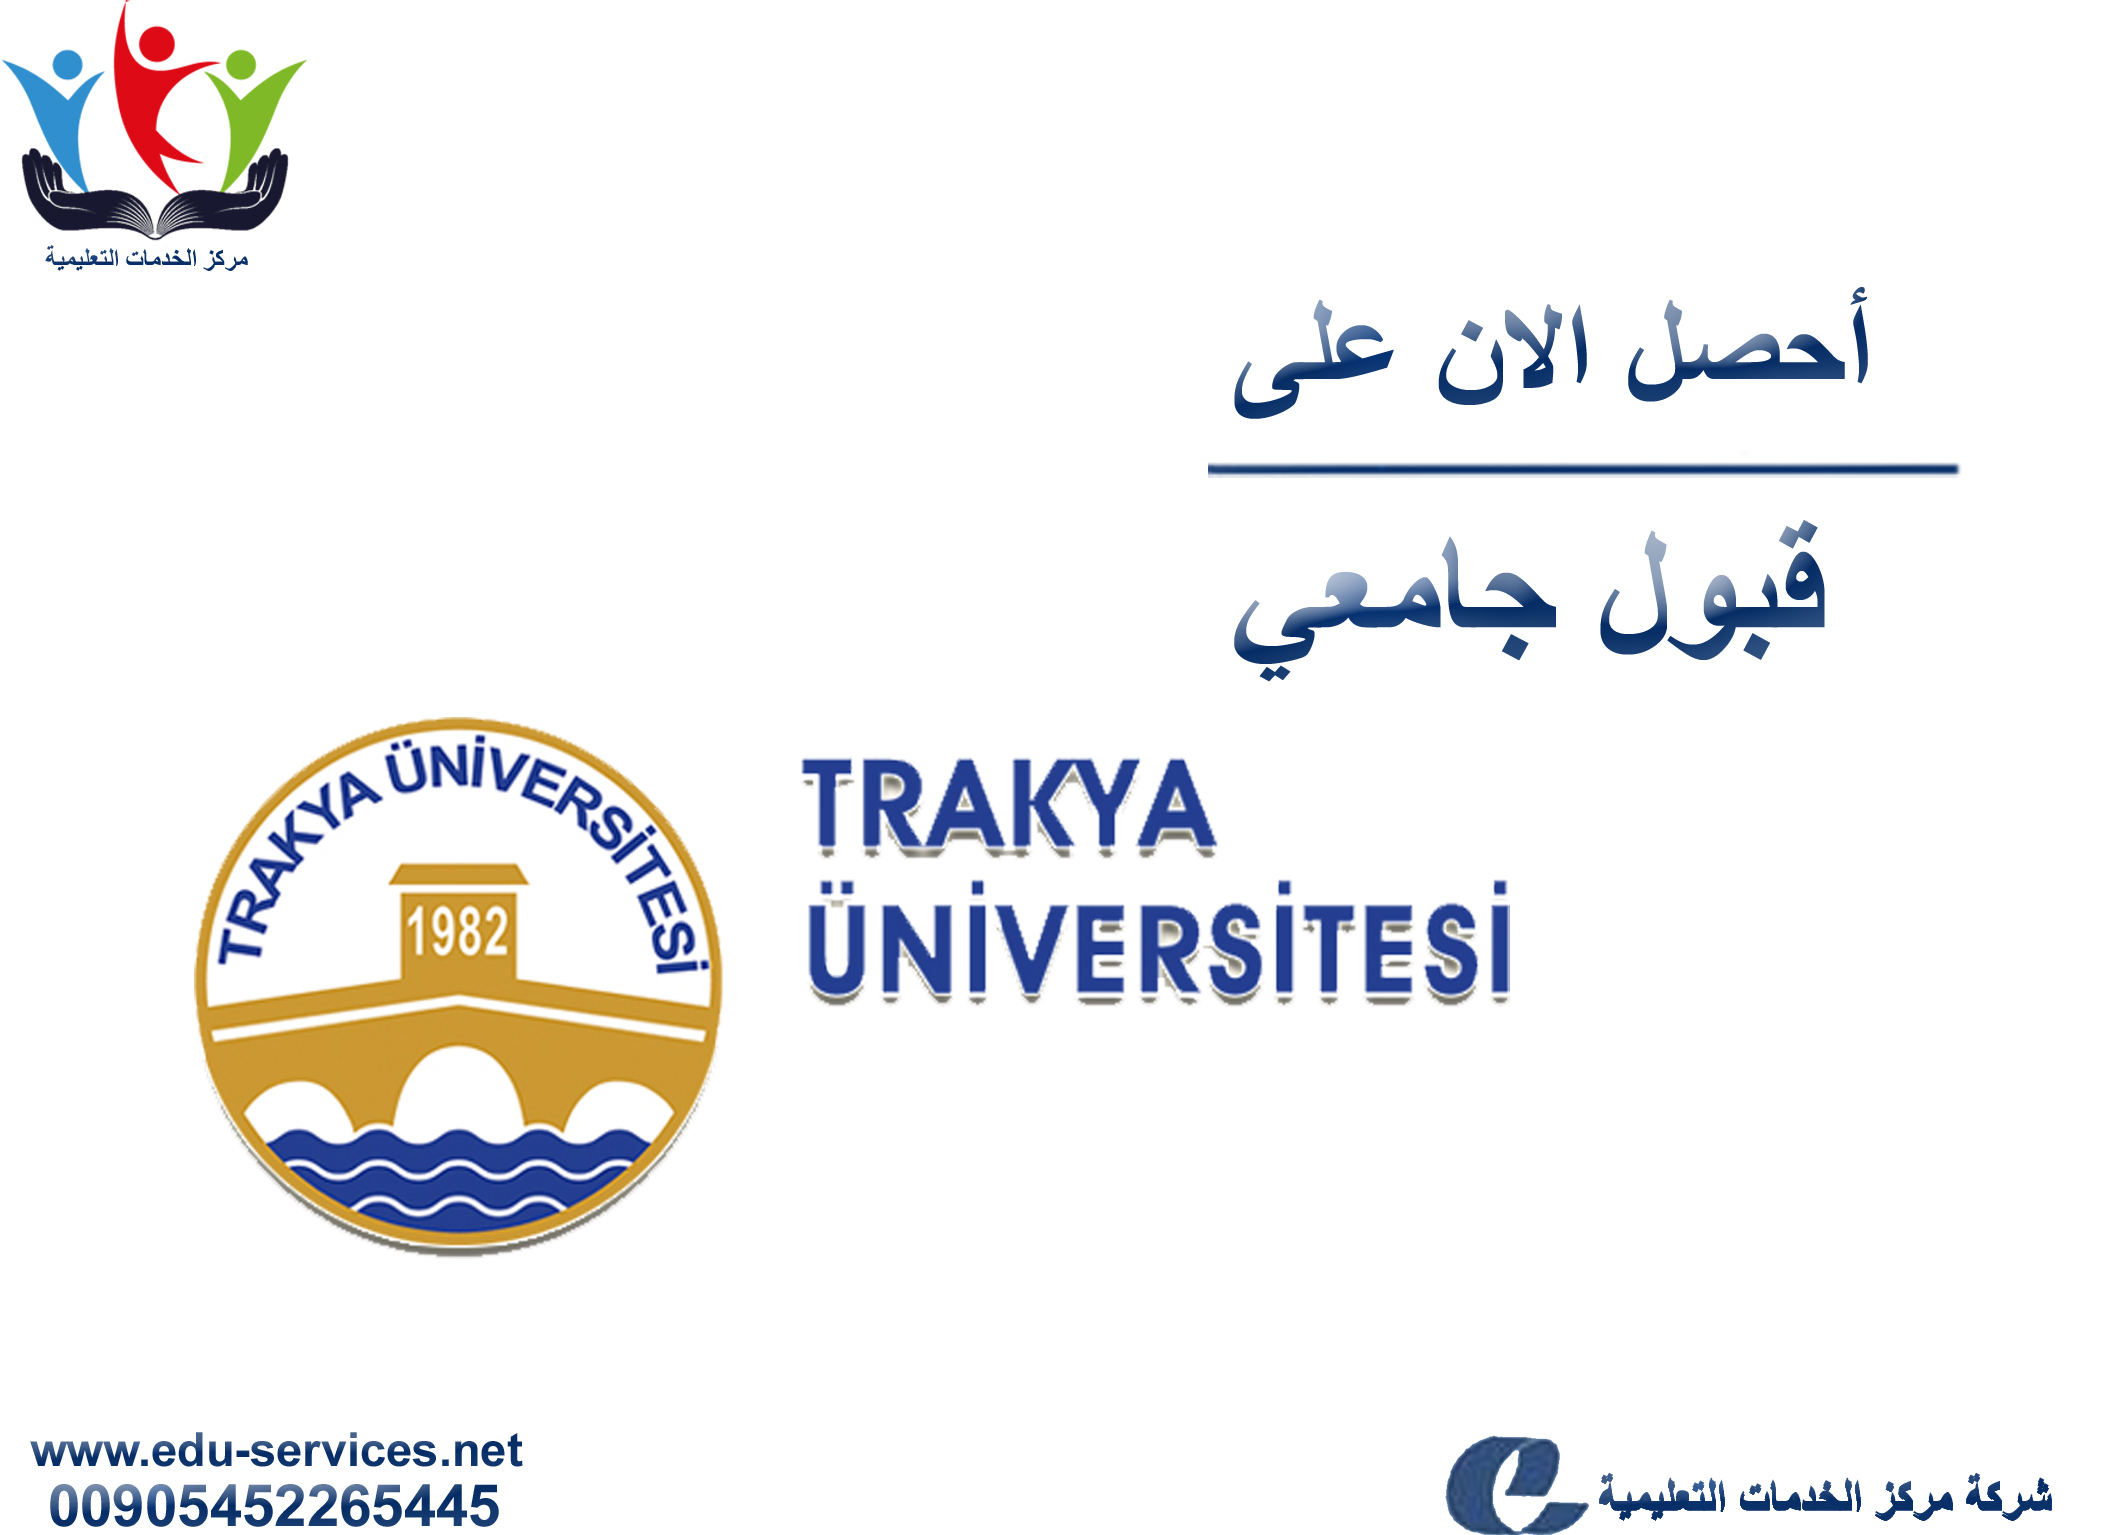 افتتاح التسجيل في جامعة تراكيا للعام 2018-2019